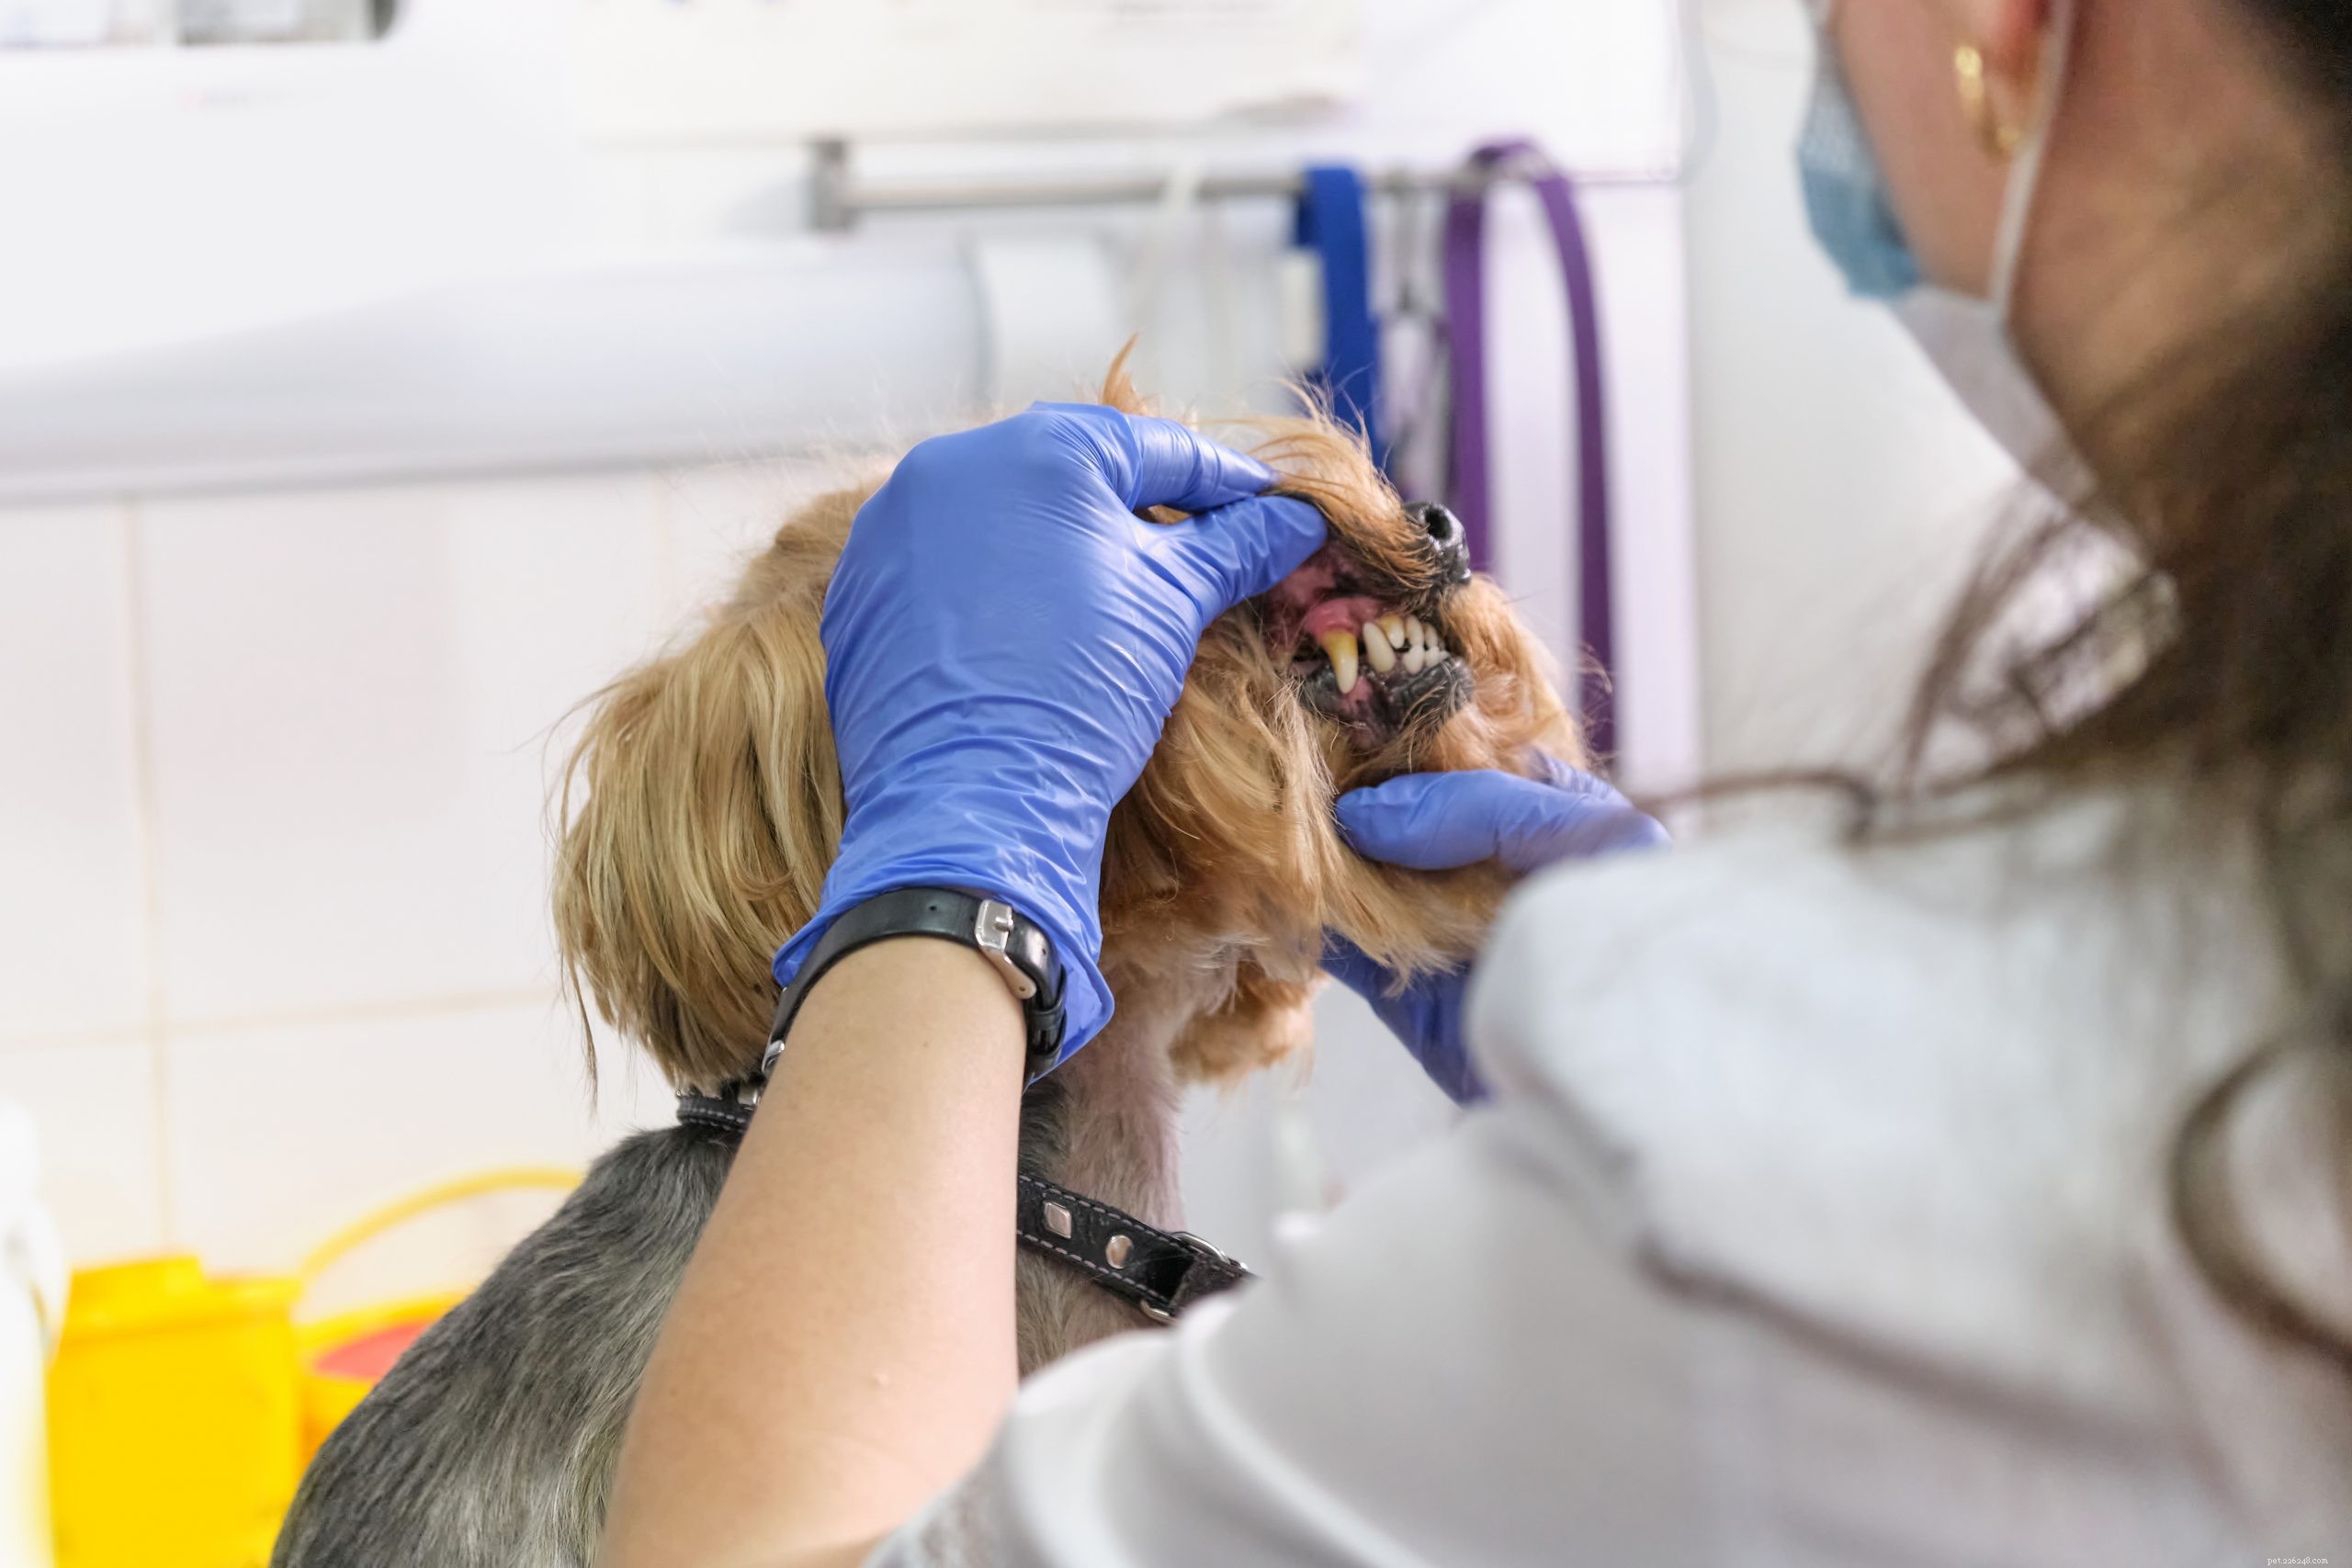 Doenças periodontais em cães:sintomas, estágios e prevenção